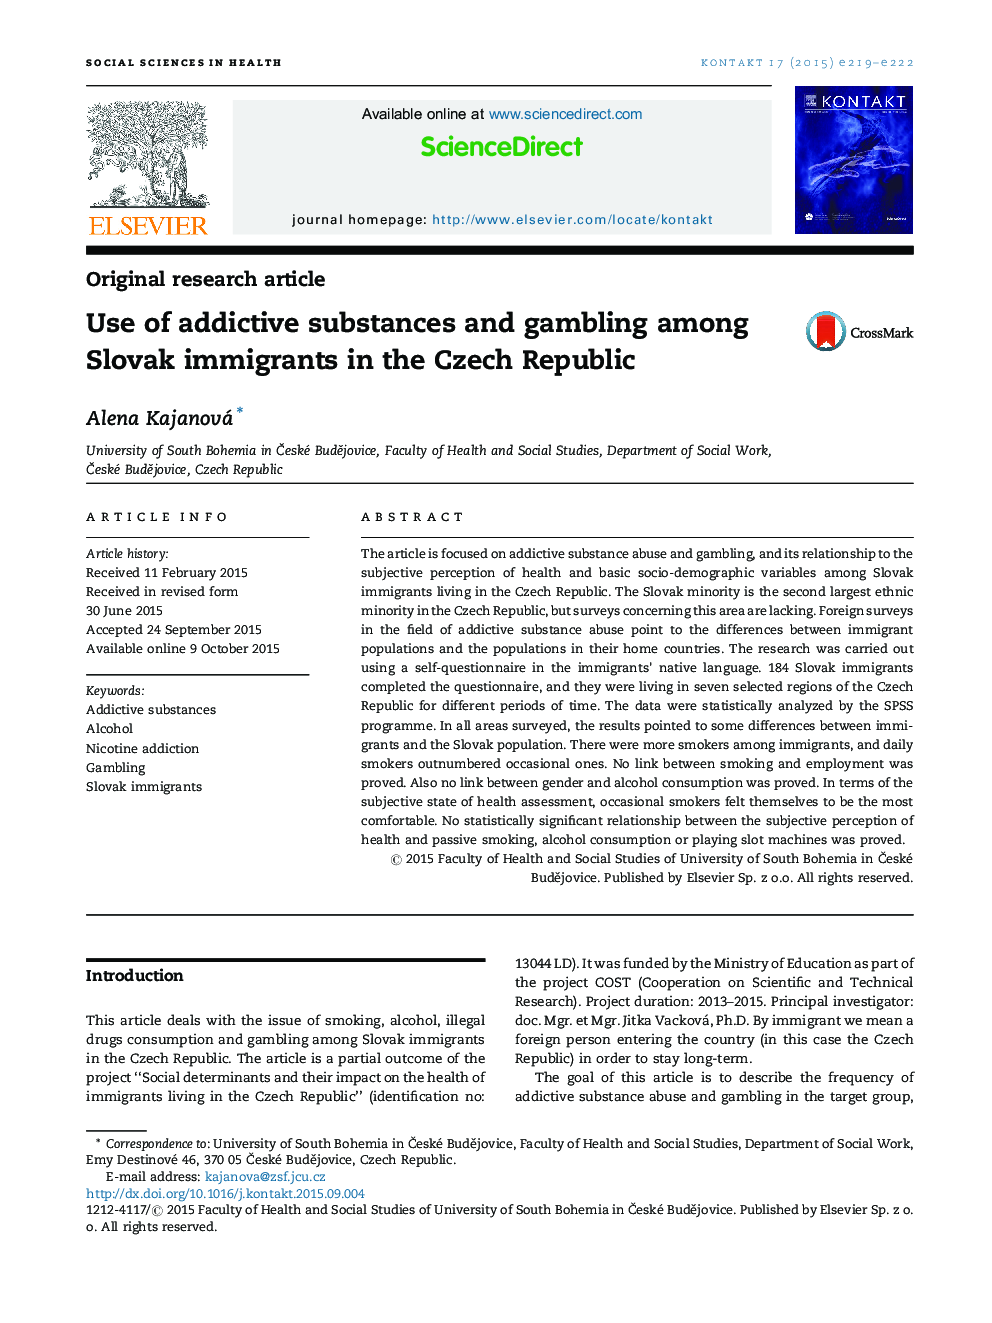 استفاده از مواد اعتیادآور و قمار در میان مهاجران اسلواکی در جمهوری چک